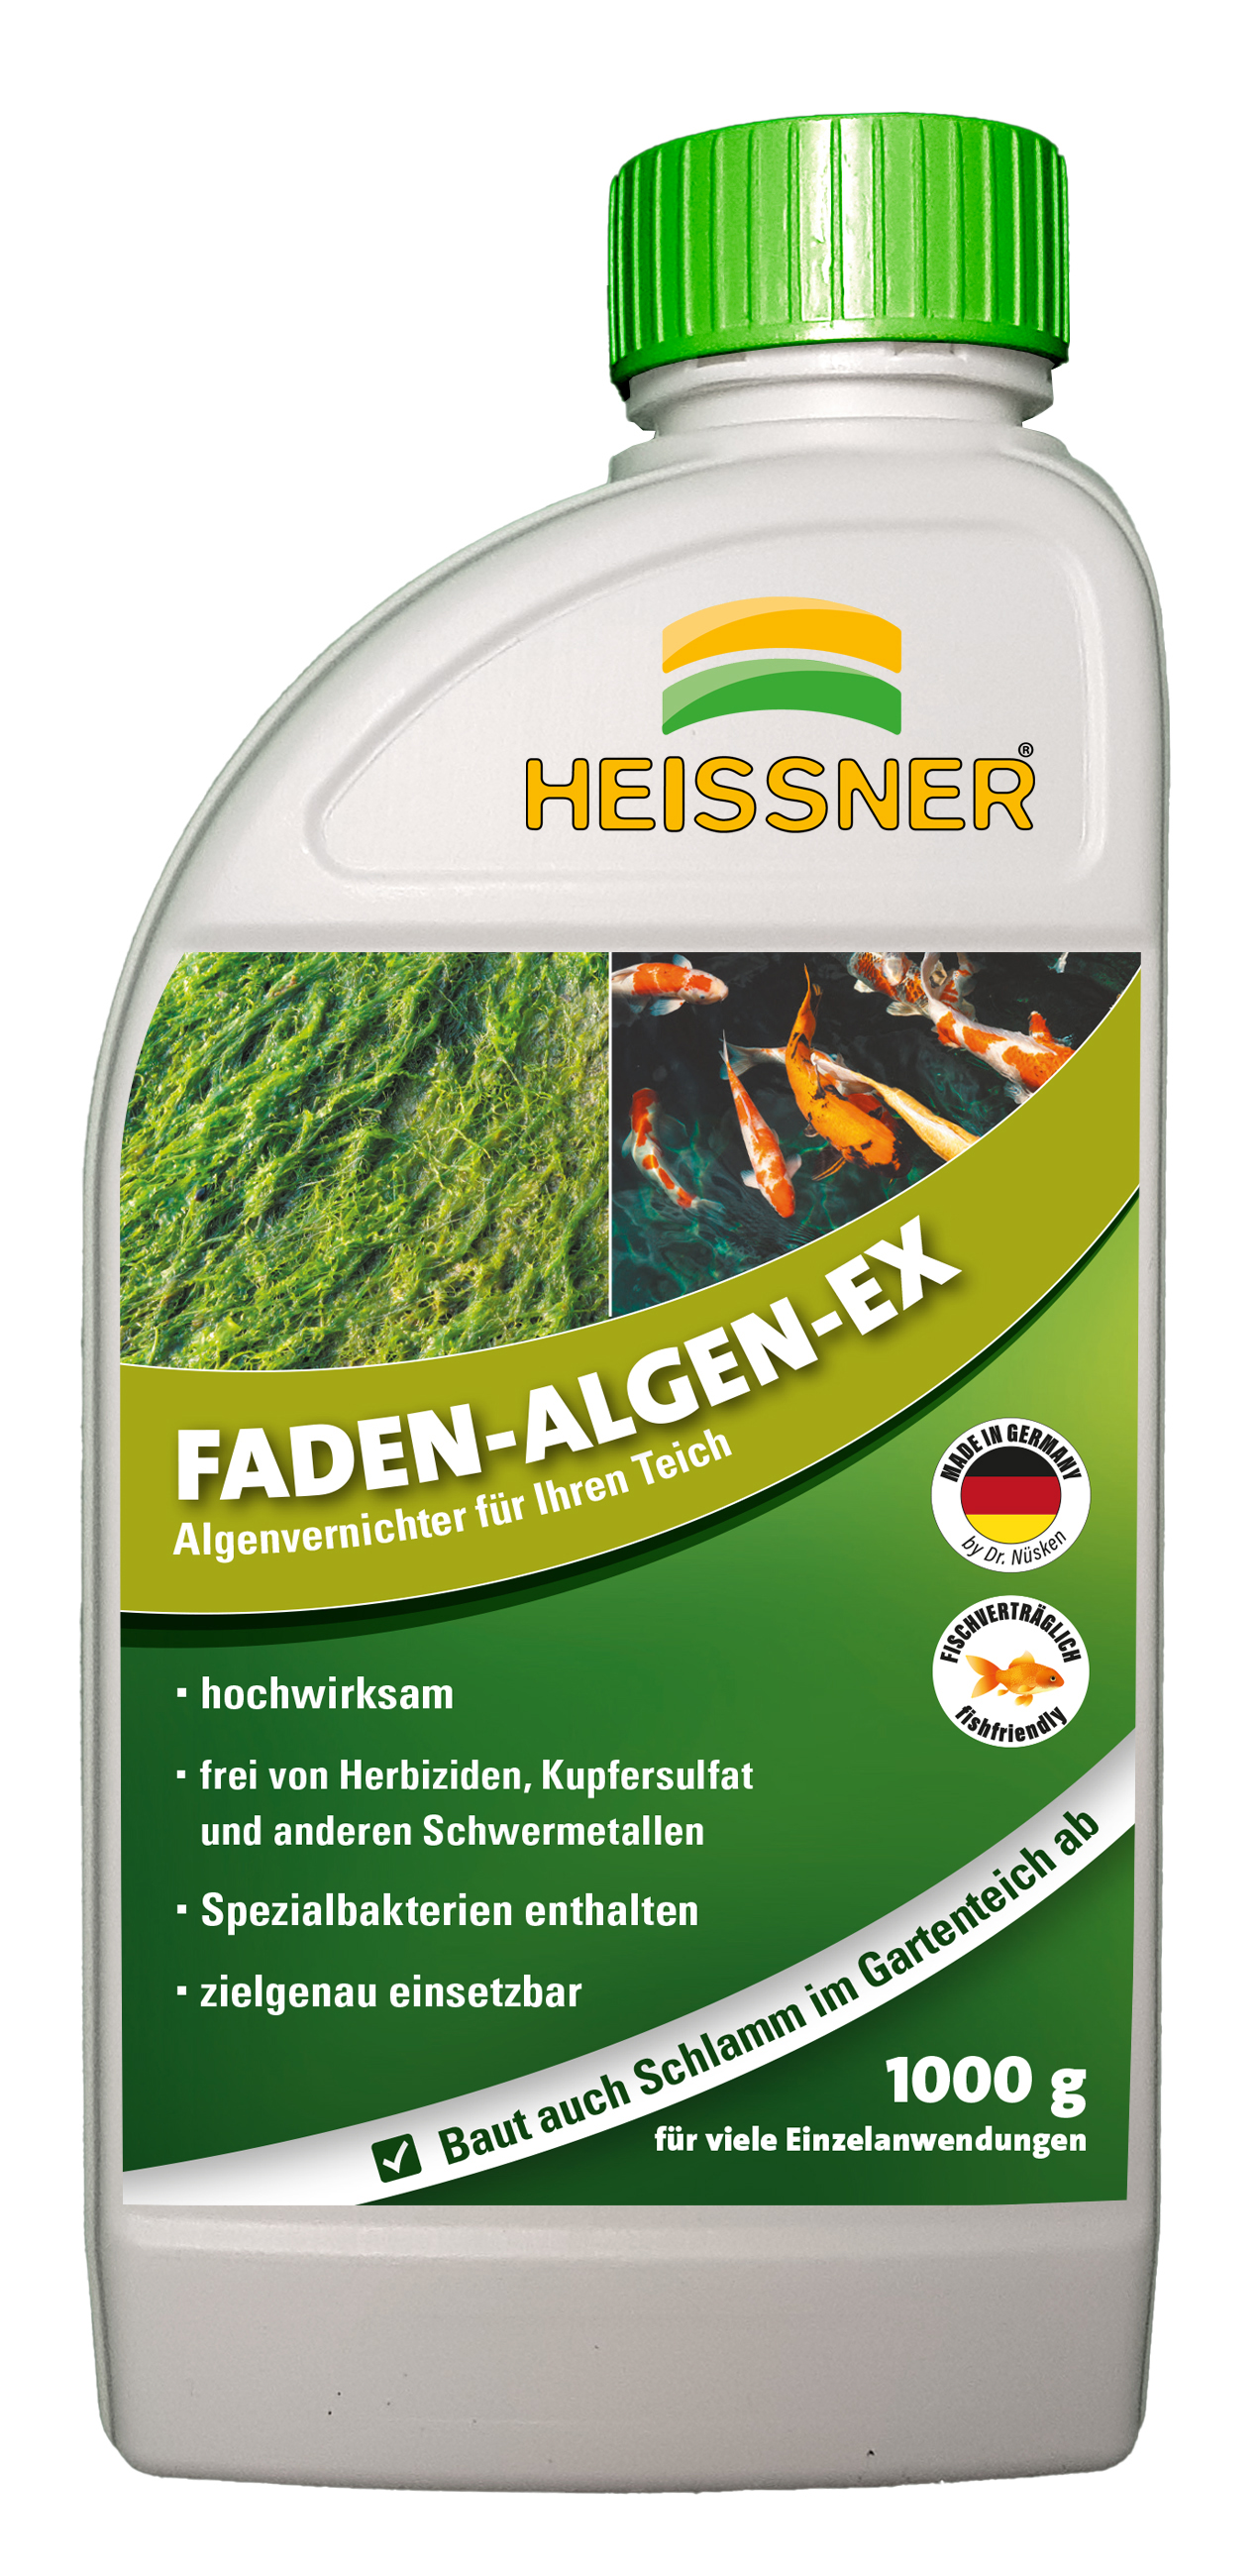 Heissner Teichpflege "FADEN-ALGEN-EX", 1000g